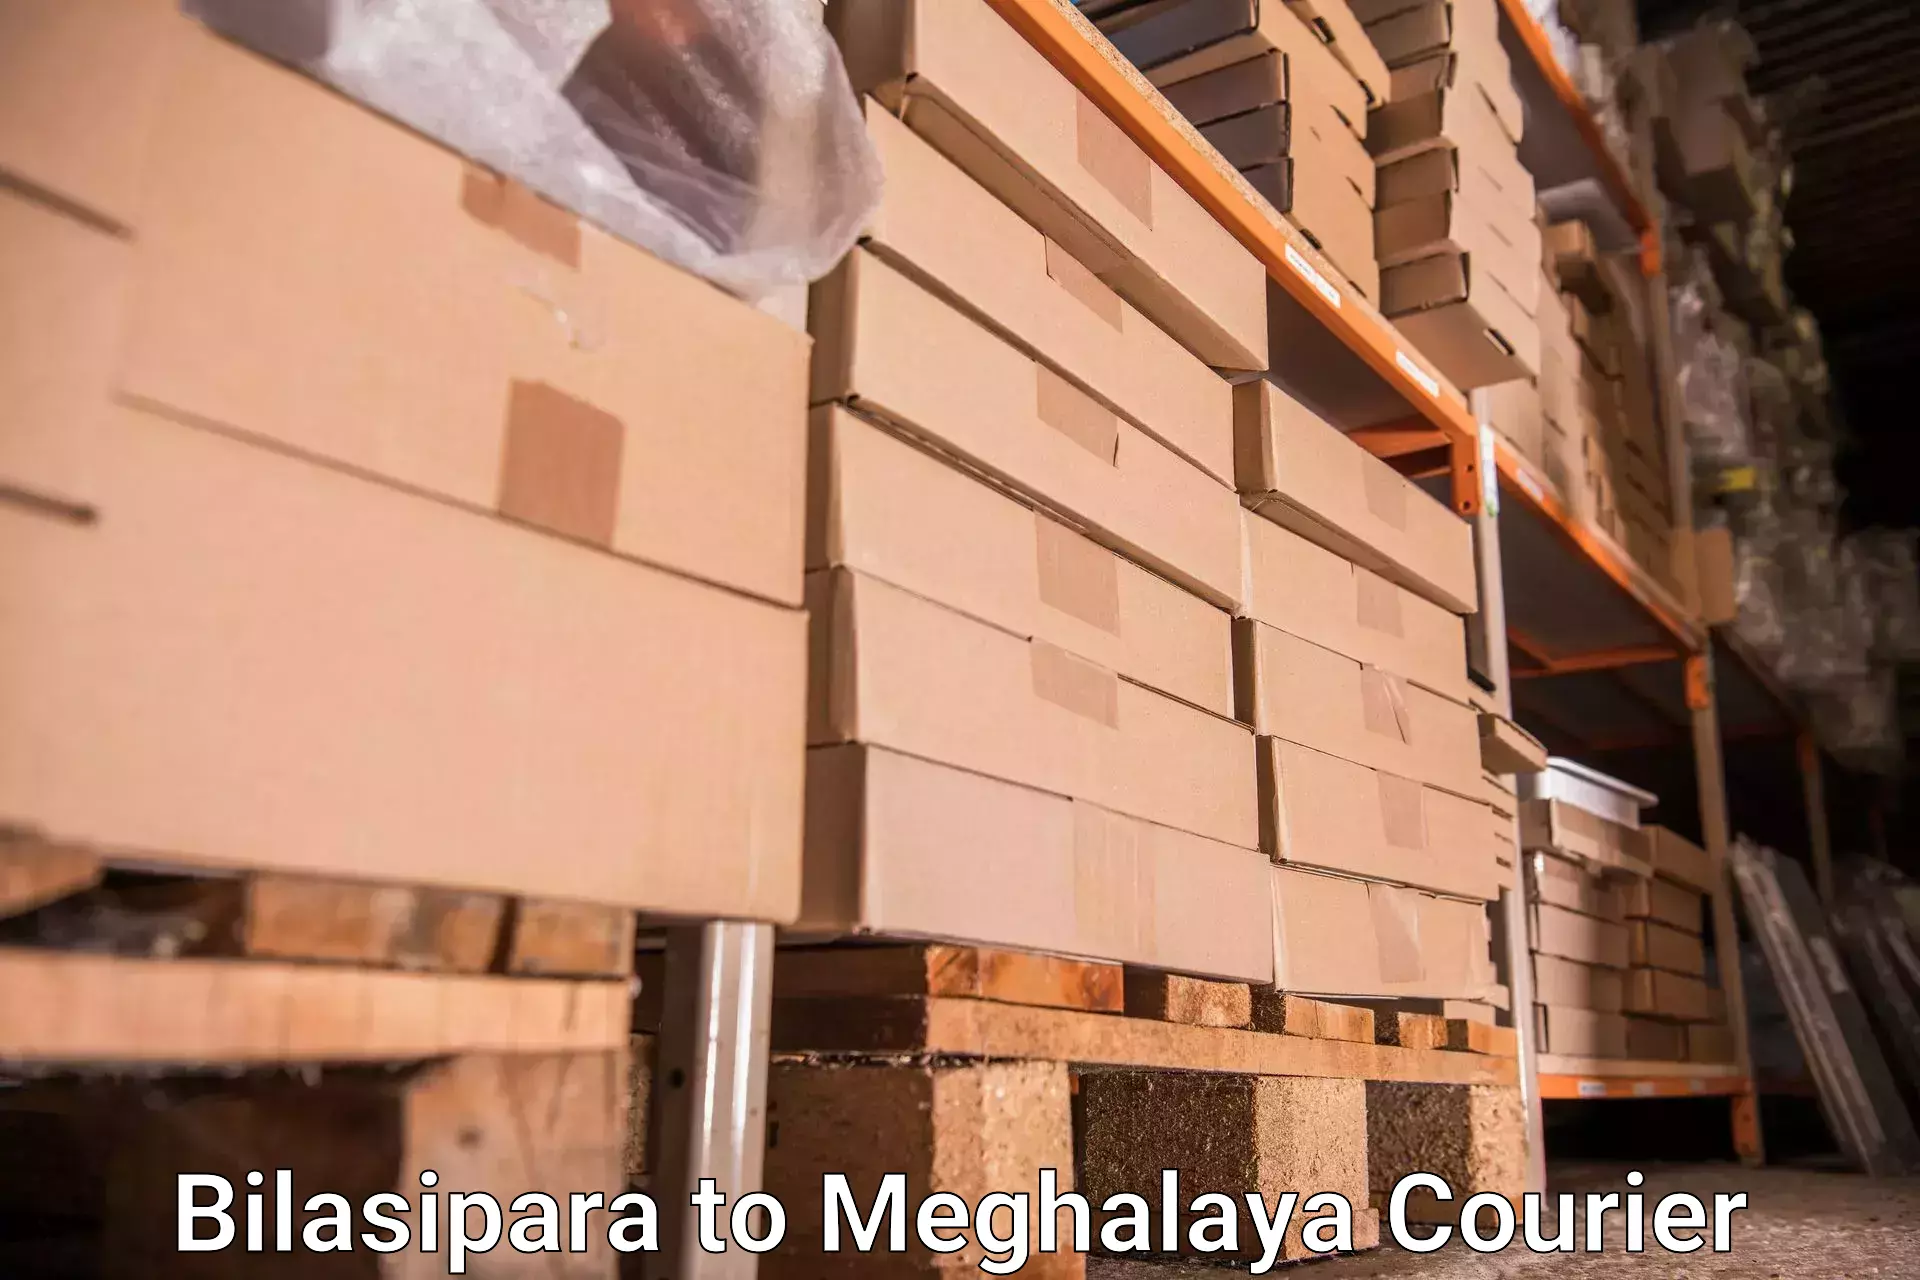 Baggage shipping quotes in Bilasipara to Tikrikilla